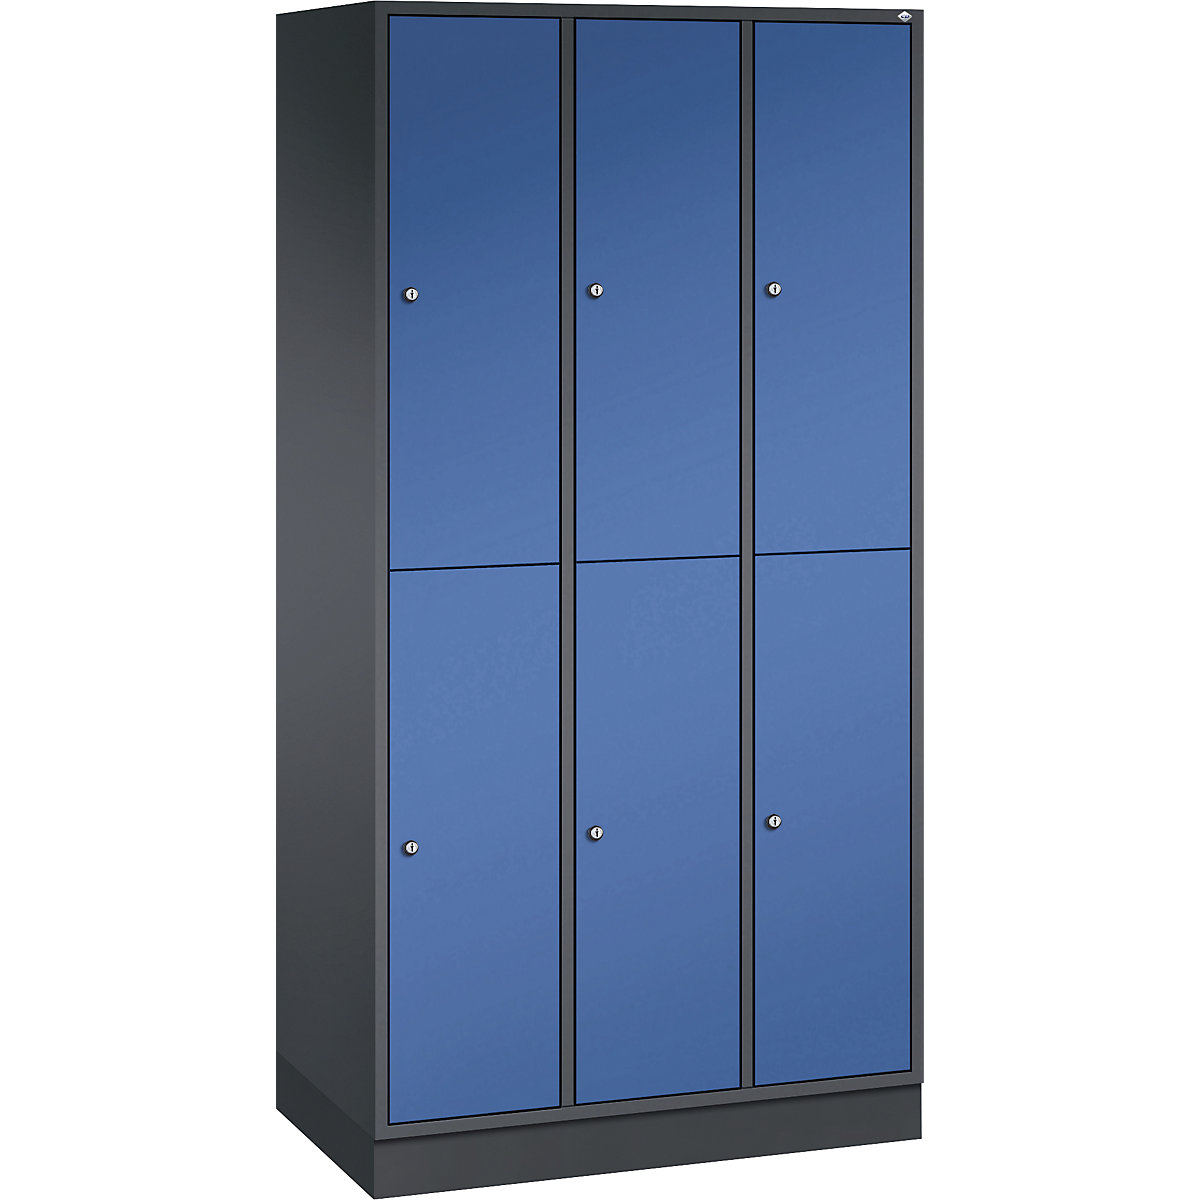 INTRO double tier steel cloakroom locker – C+P, WxD 920 x 500 mm, 6 compartments, black grey body, gentian blue doors